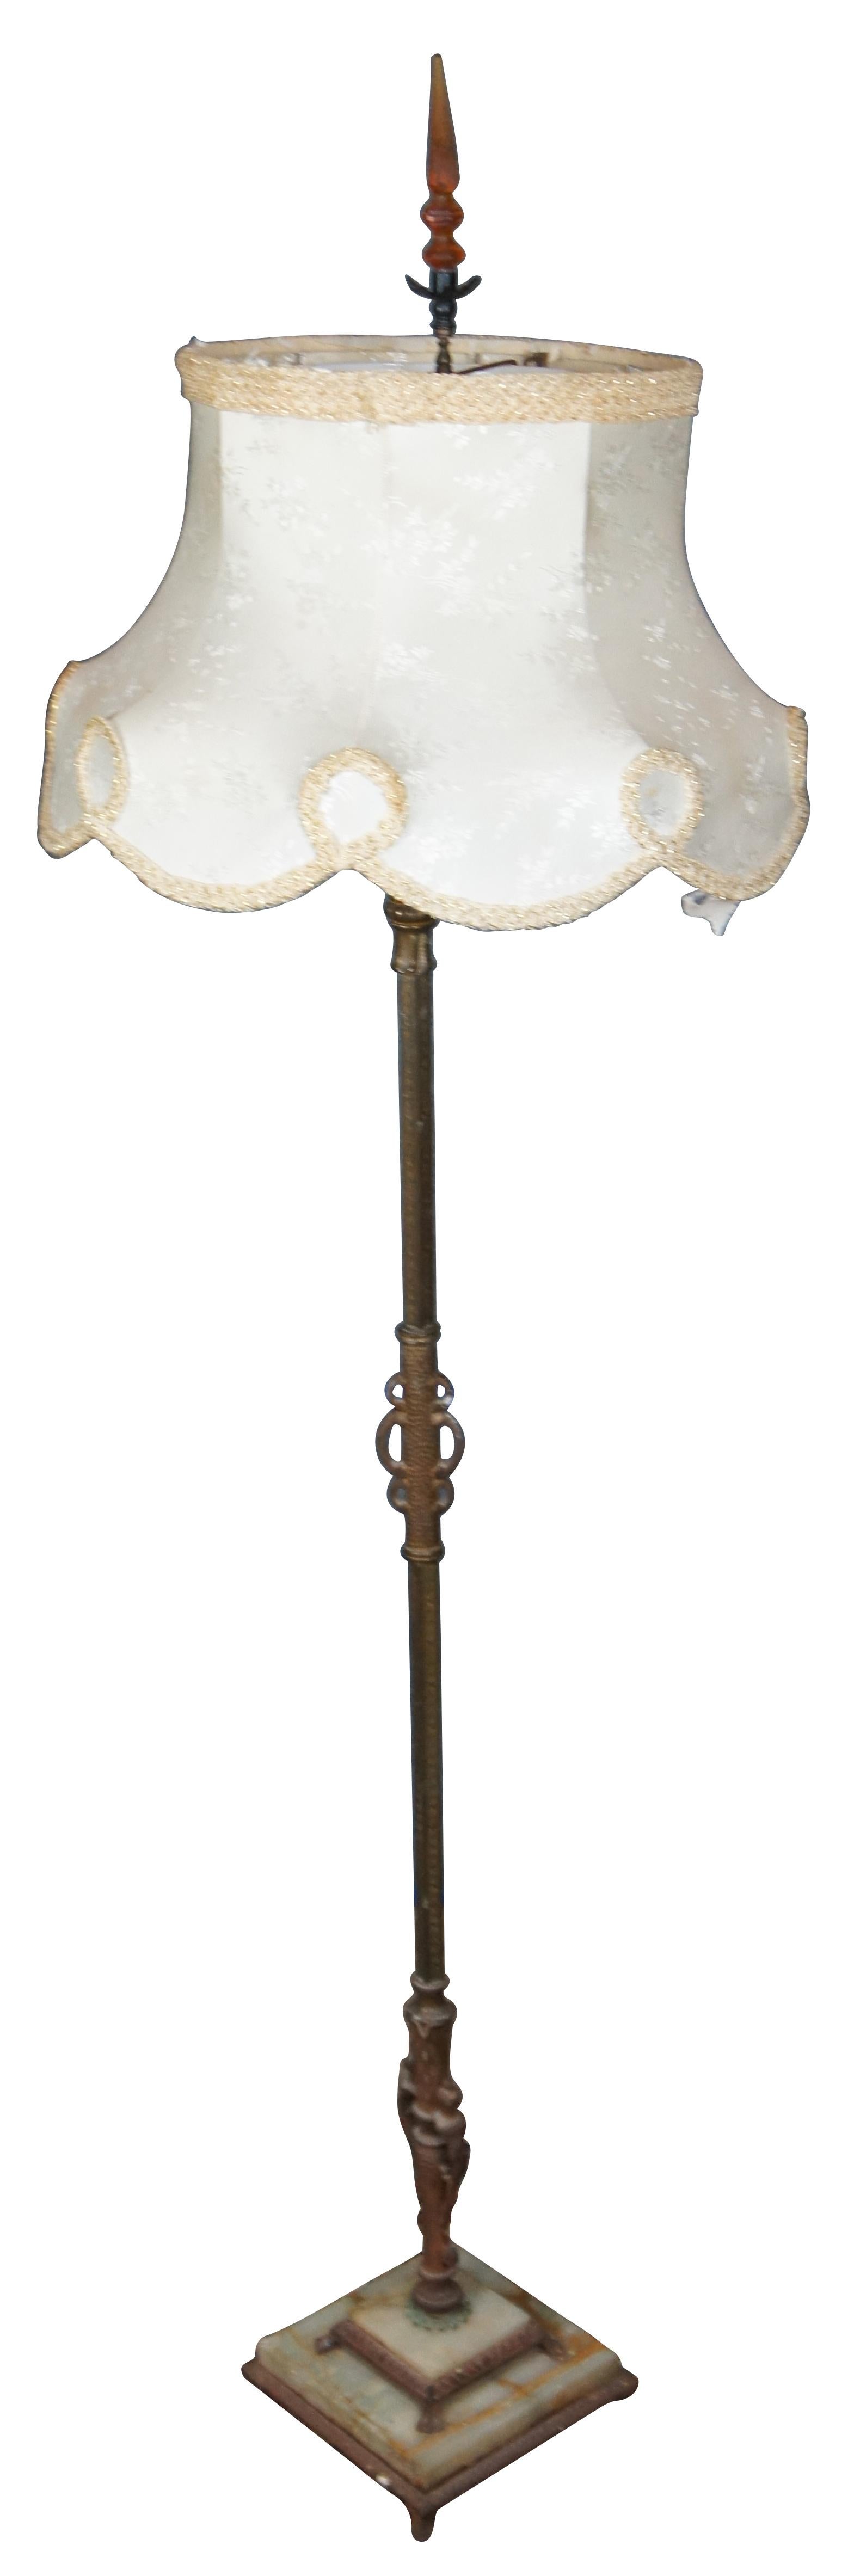 Grand lampadaire de la fin du 19e siècle et du début du 20e siècle, avec une base en fer et en marbre blanc, un corps en laiton avec des douilles de candélabre pour trois ampoules en forme de bougie et un sommet principal de style torchère avec un